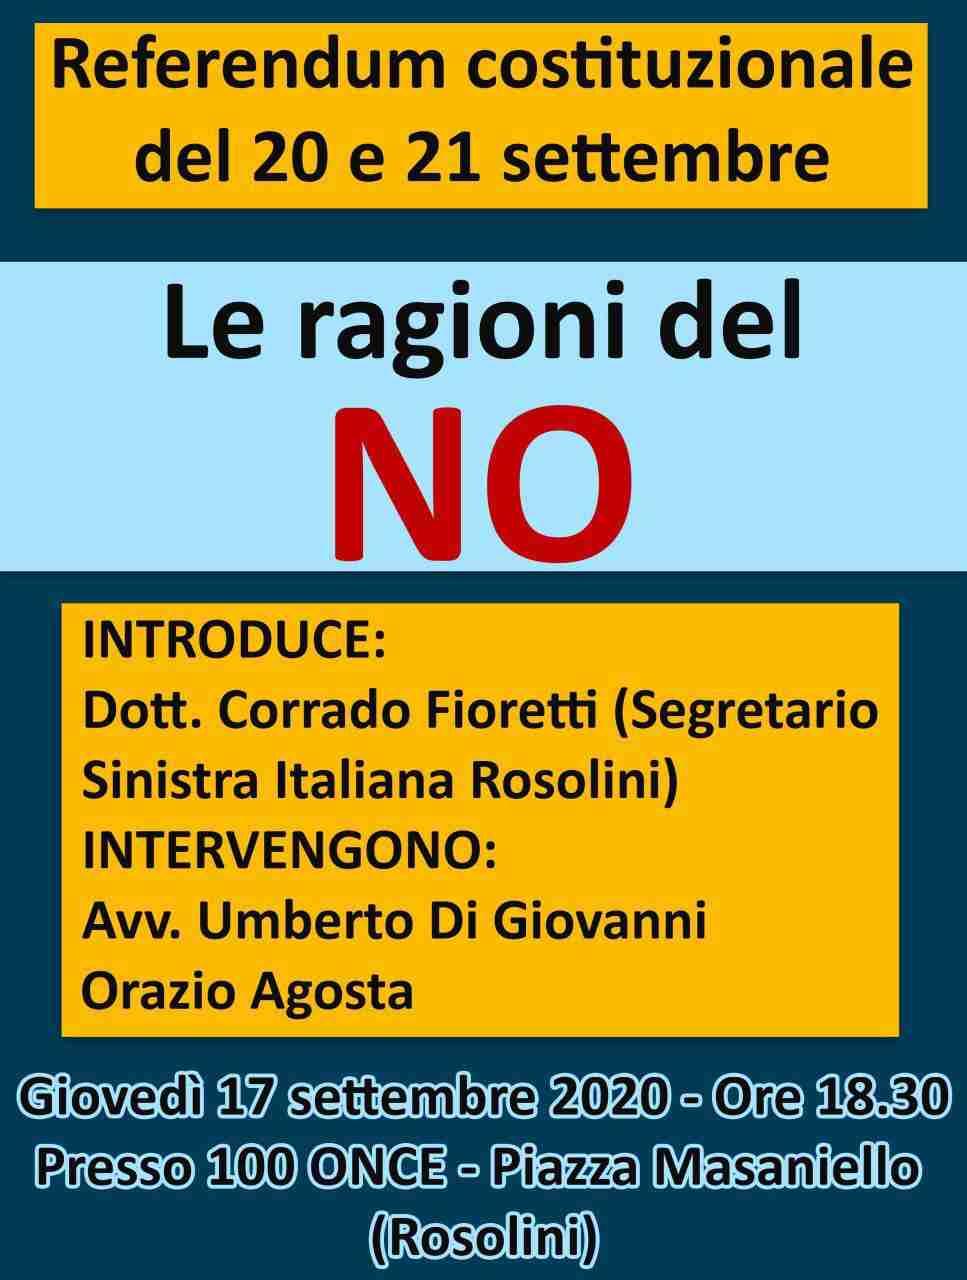 Referendum: domani pomeriggio conferenza stampa di Sinistra Italiana sulle ragioni del “No”